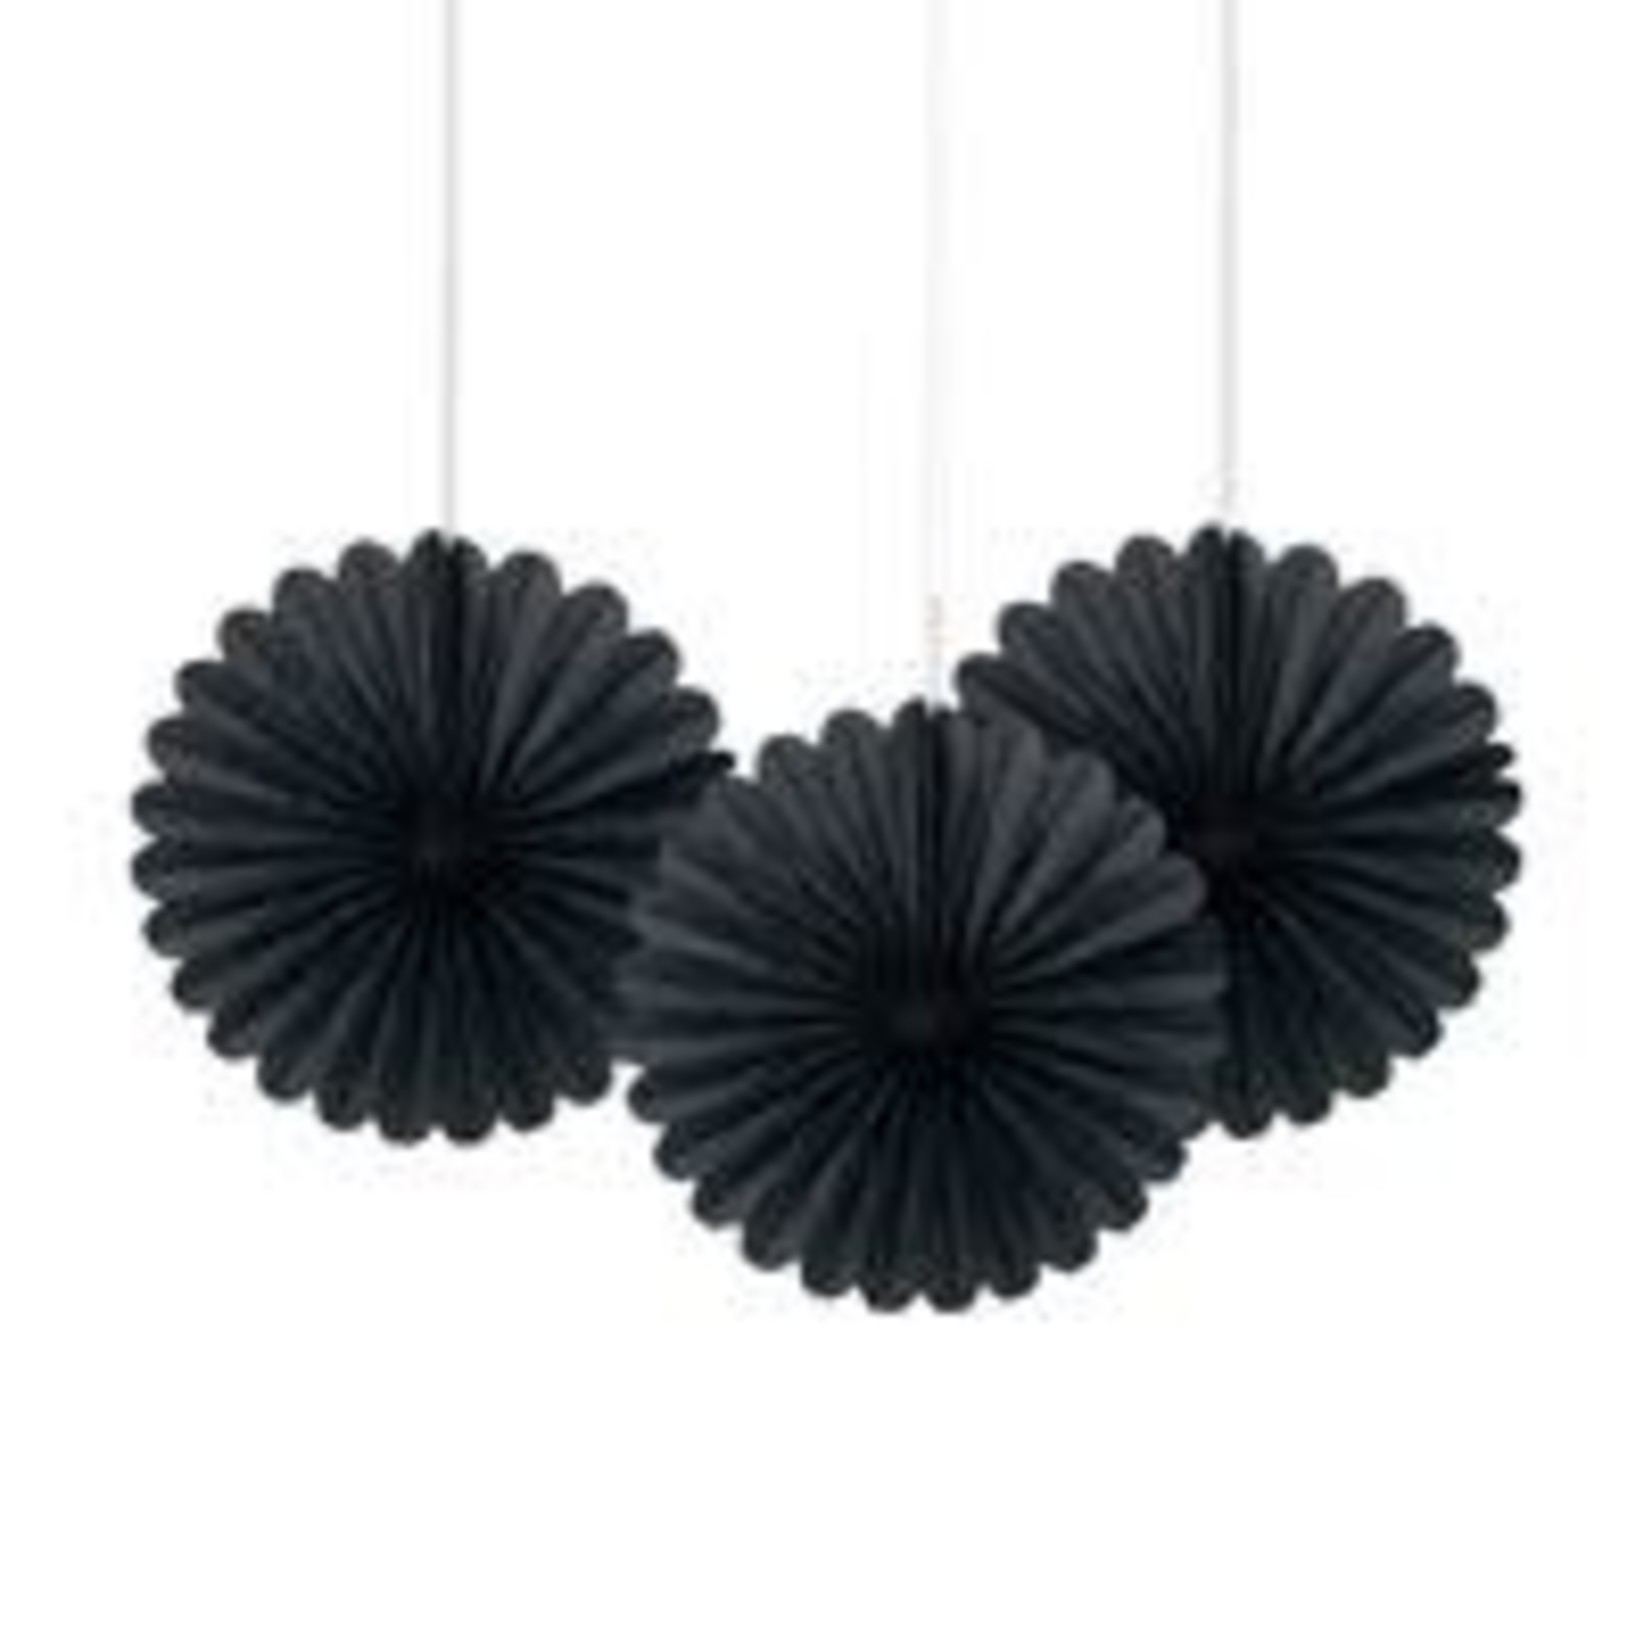 unique 6" Black Decorative Tissue Fans - 3ct.